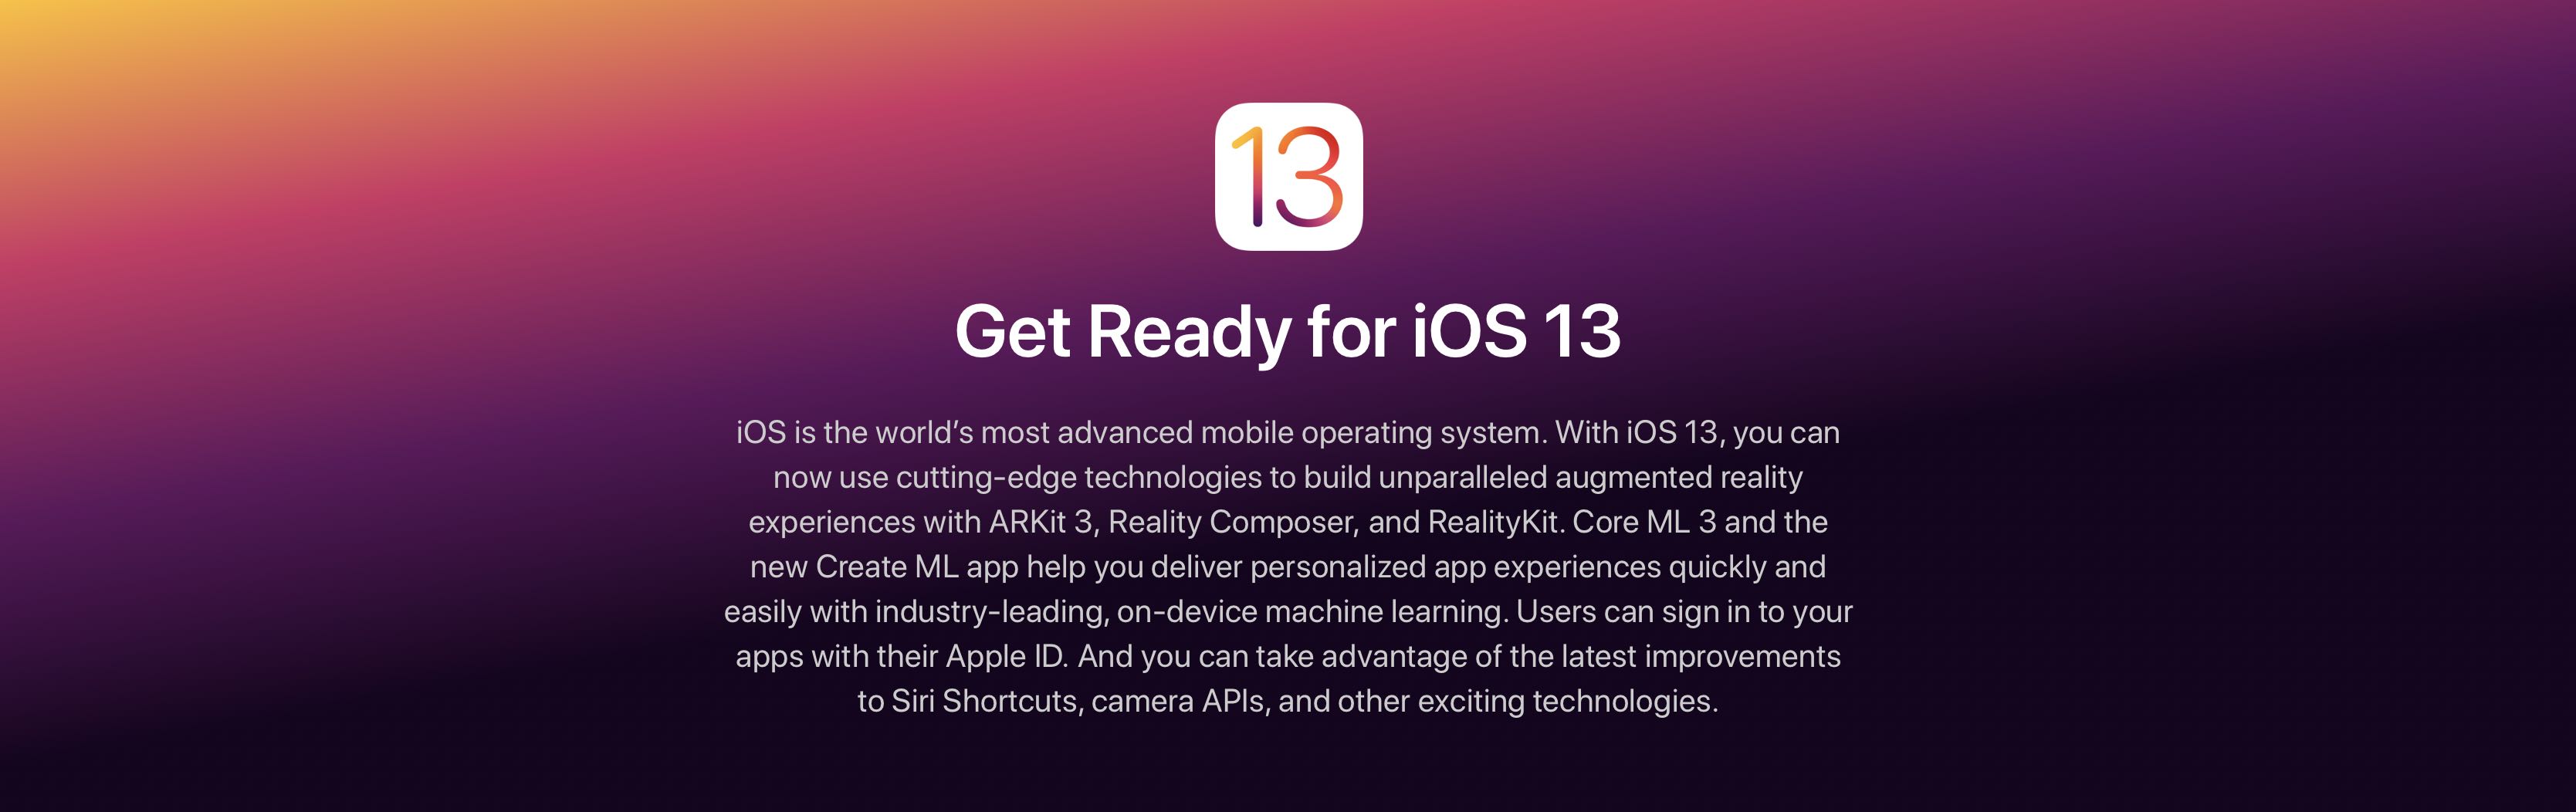 iOS 13 get ready